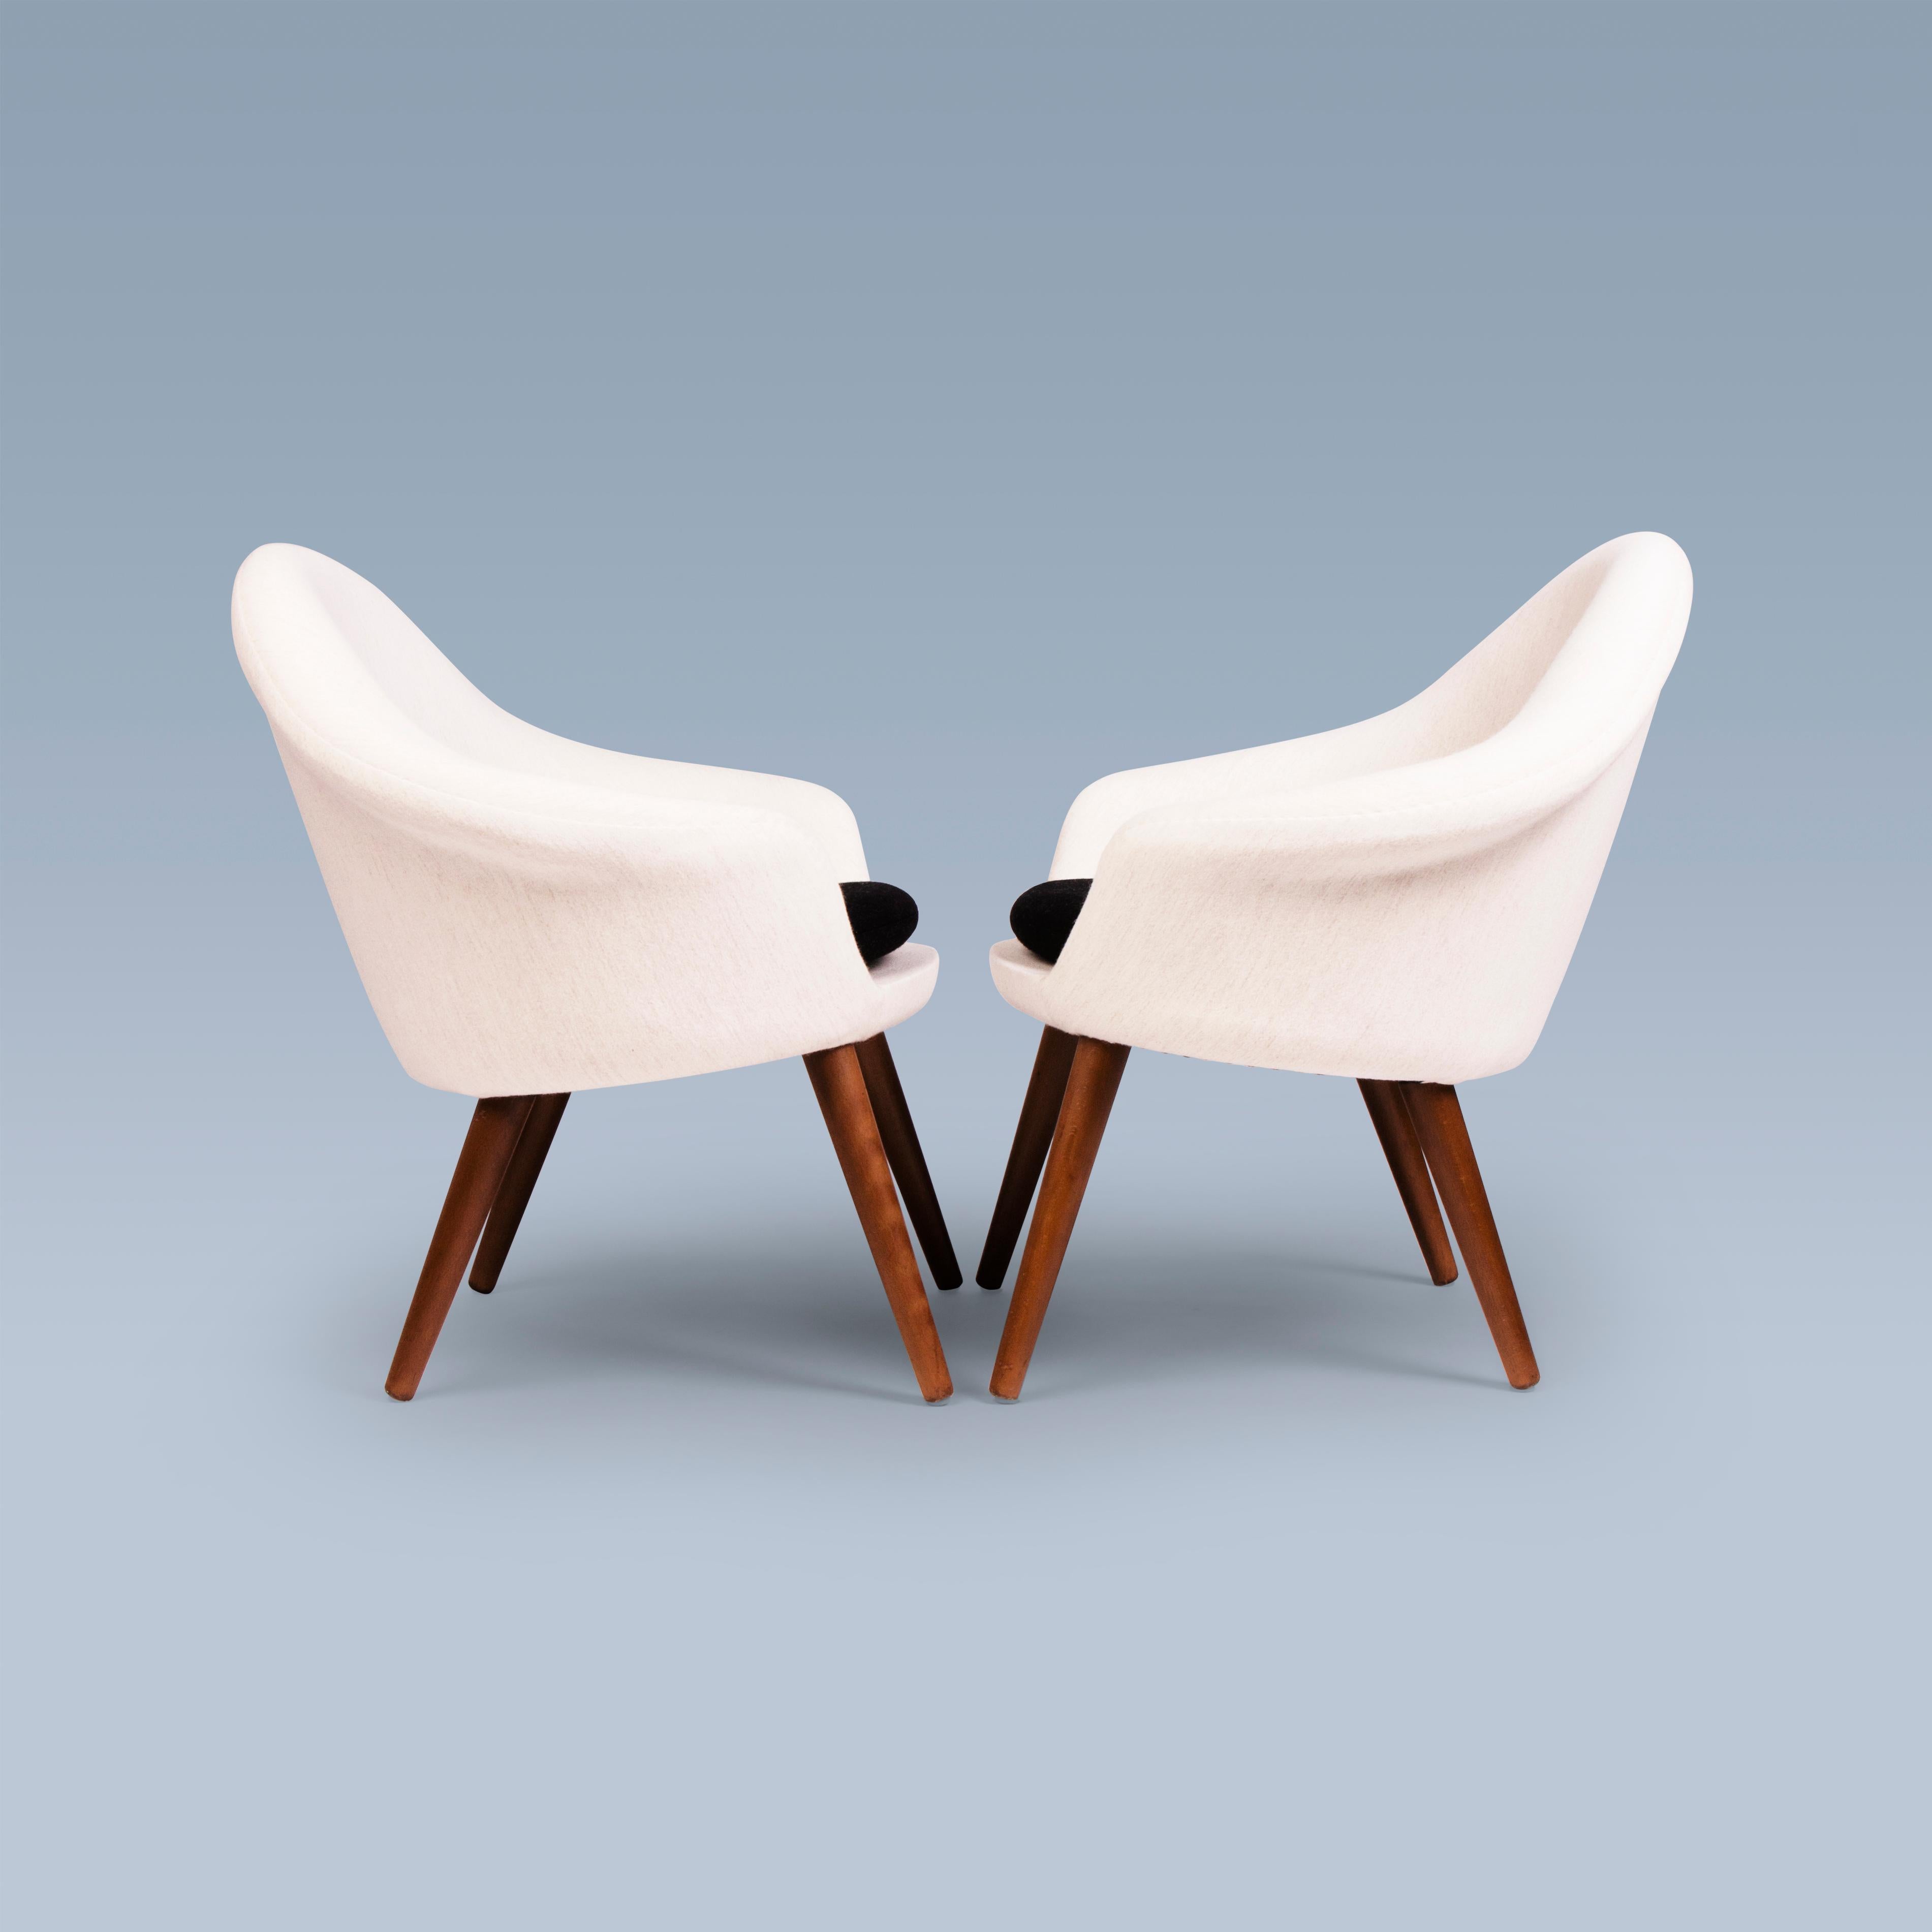 Dieses Paar Loungesessel mit Sitzkissen wurde 1956 von Hans Olsen (1919-1992) entworfen. Die Stühle haben die Modellnummer 187. Sie sind mit weißer und schwarzer Savak-Wolle von Gabriel gepolstert. Ihre Beine sind aus gebeiztem Holz.
Die